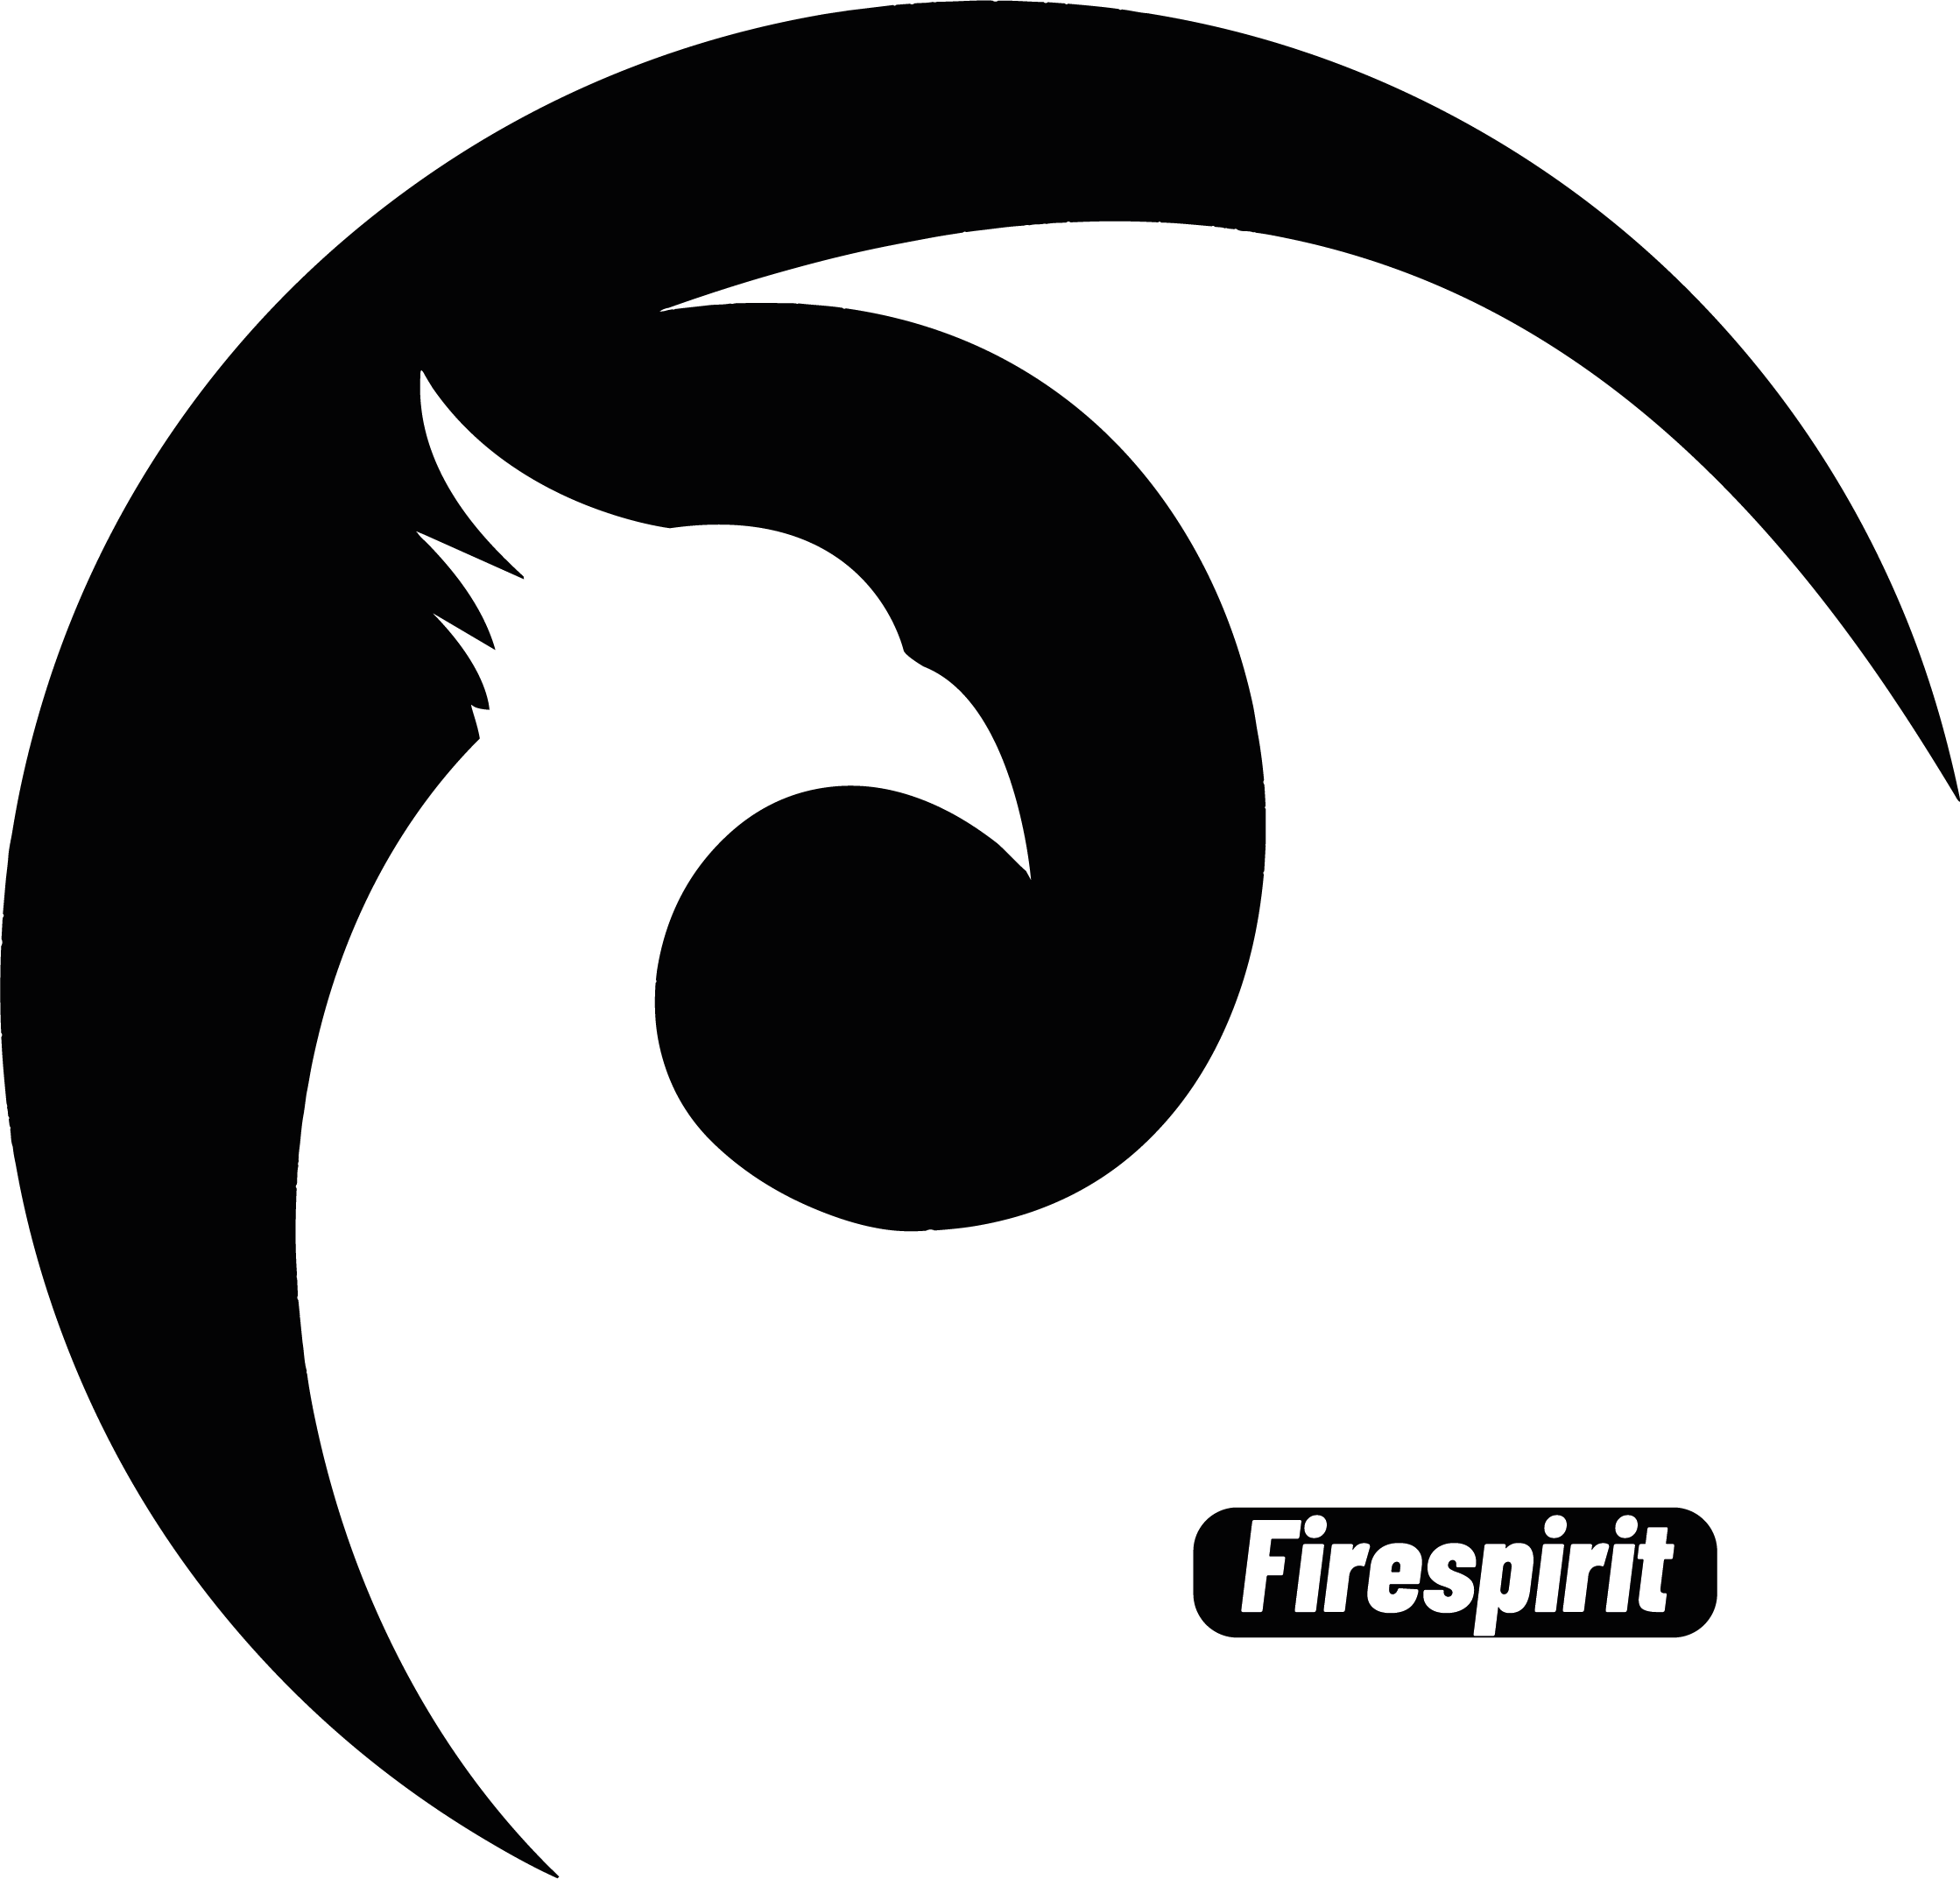 Firespirit